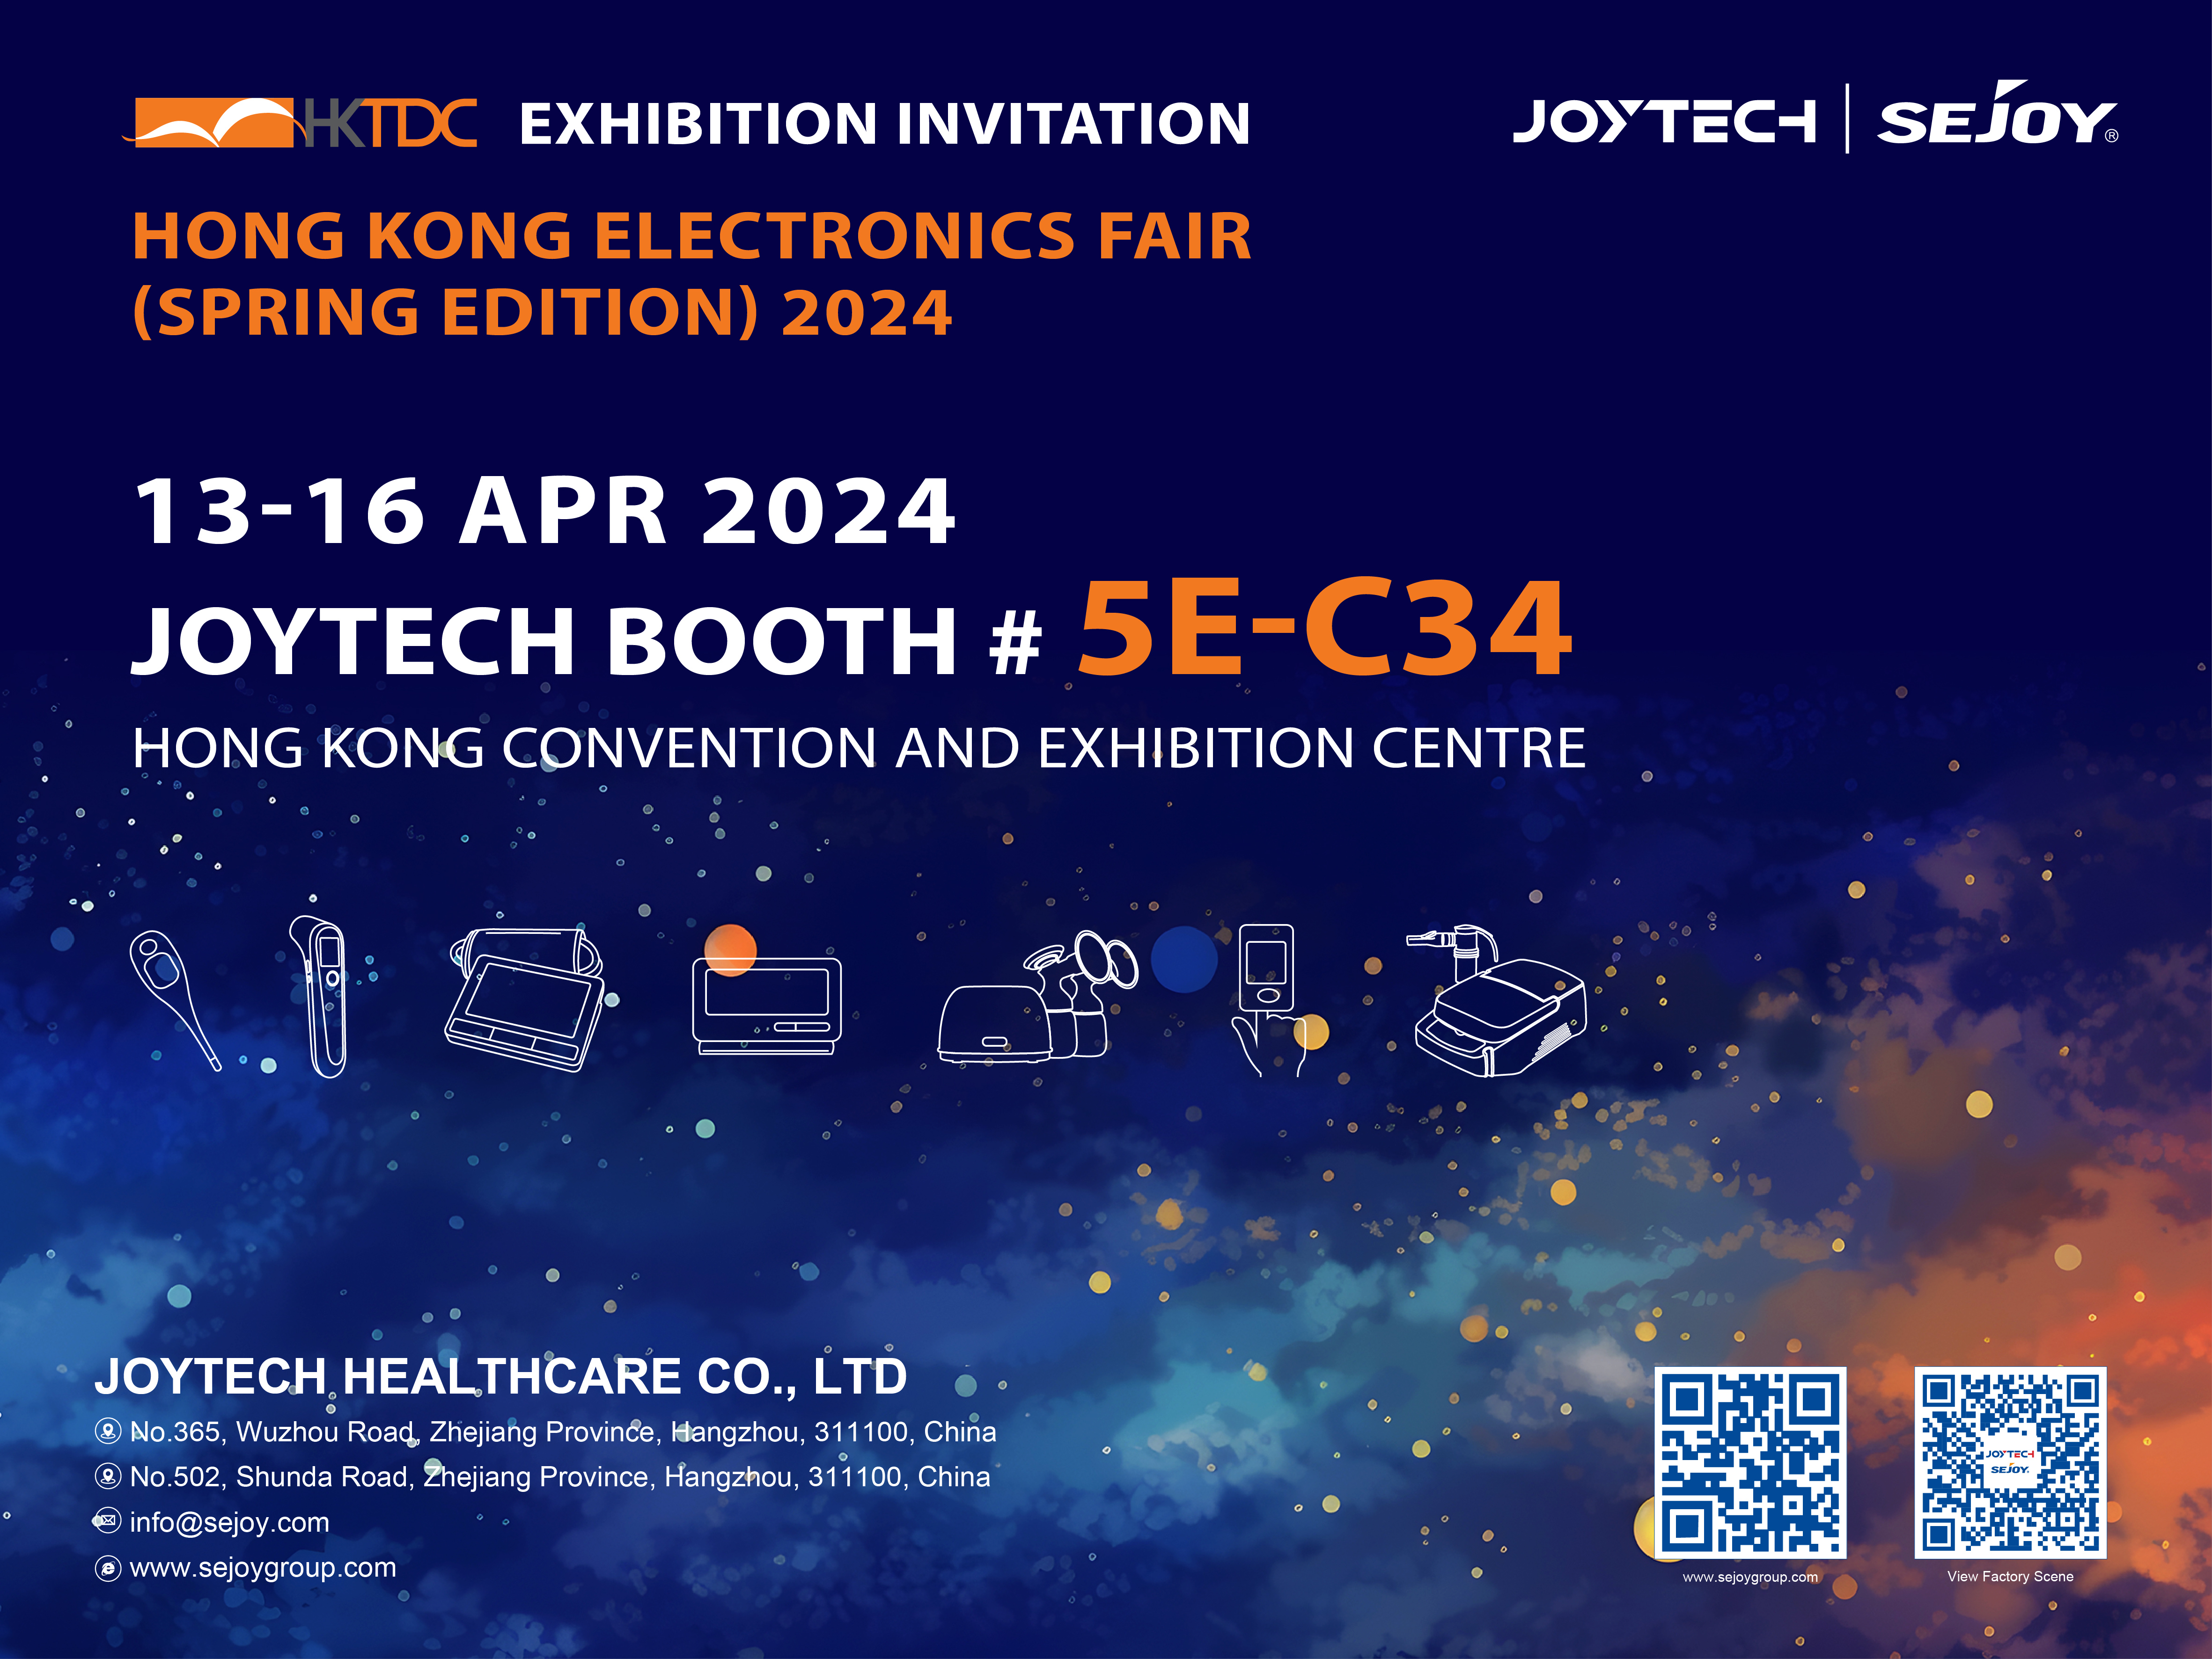 Einladung, unsere innovativen Gesundheitslösungen auf der Hong Kong Electronics Fair zu entdecken